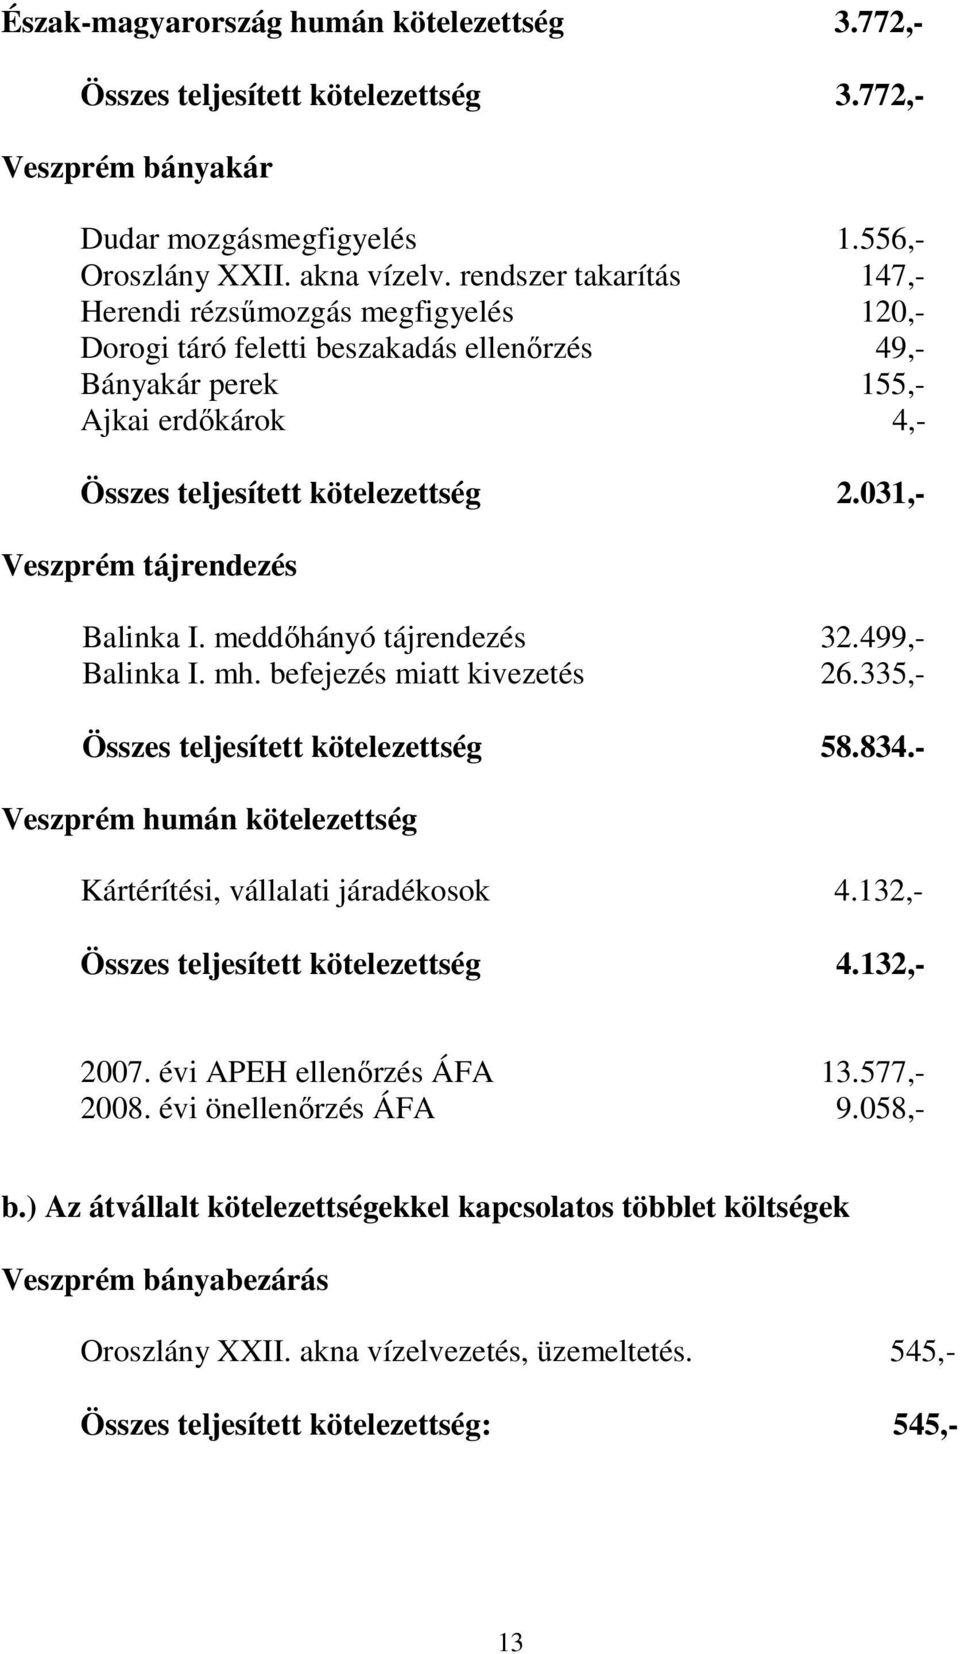 031,- Veszprém tájrendezés Balinka I. meddıhányó tájrendezés 32.499,- Balinka I. mh. befejezés miatt kivezetés 26.335,- Összes teljesített kötelezettség 58.834.